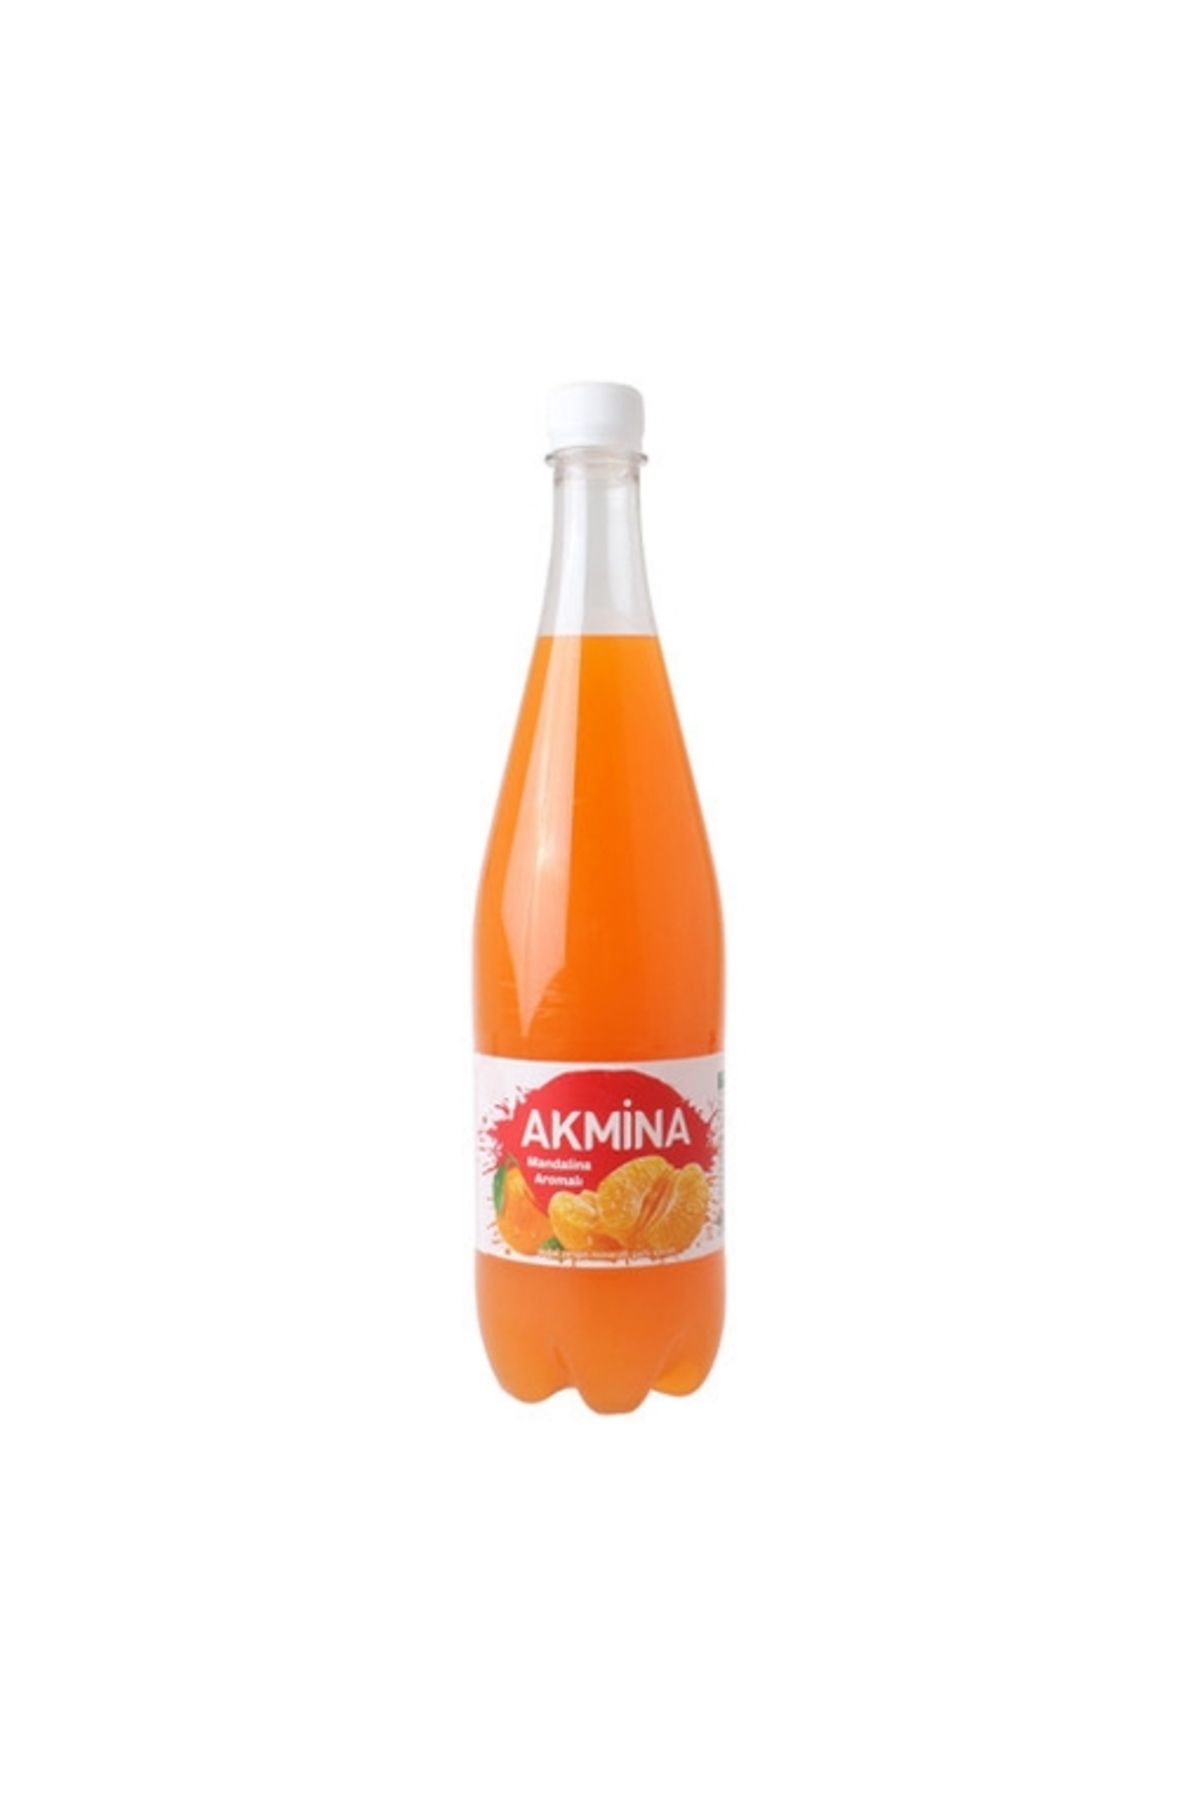 Akmina Mandalina Maden Suyu 1 Lt. (meyveli soda) (12'li)